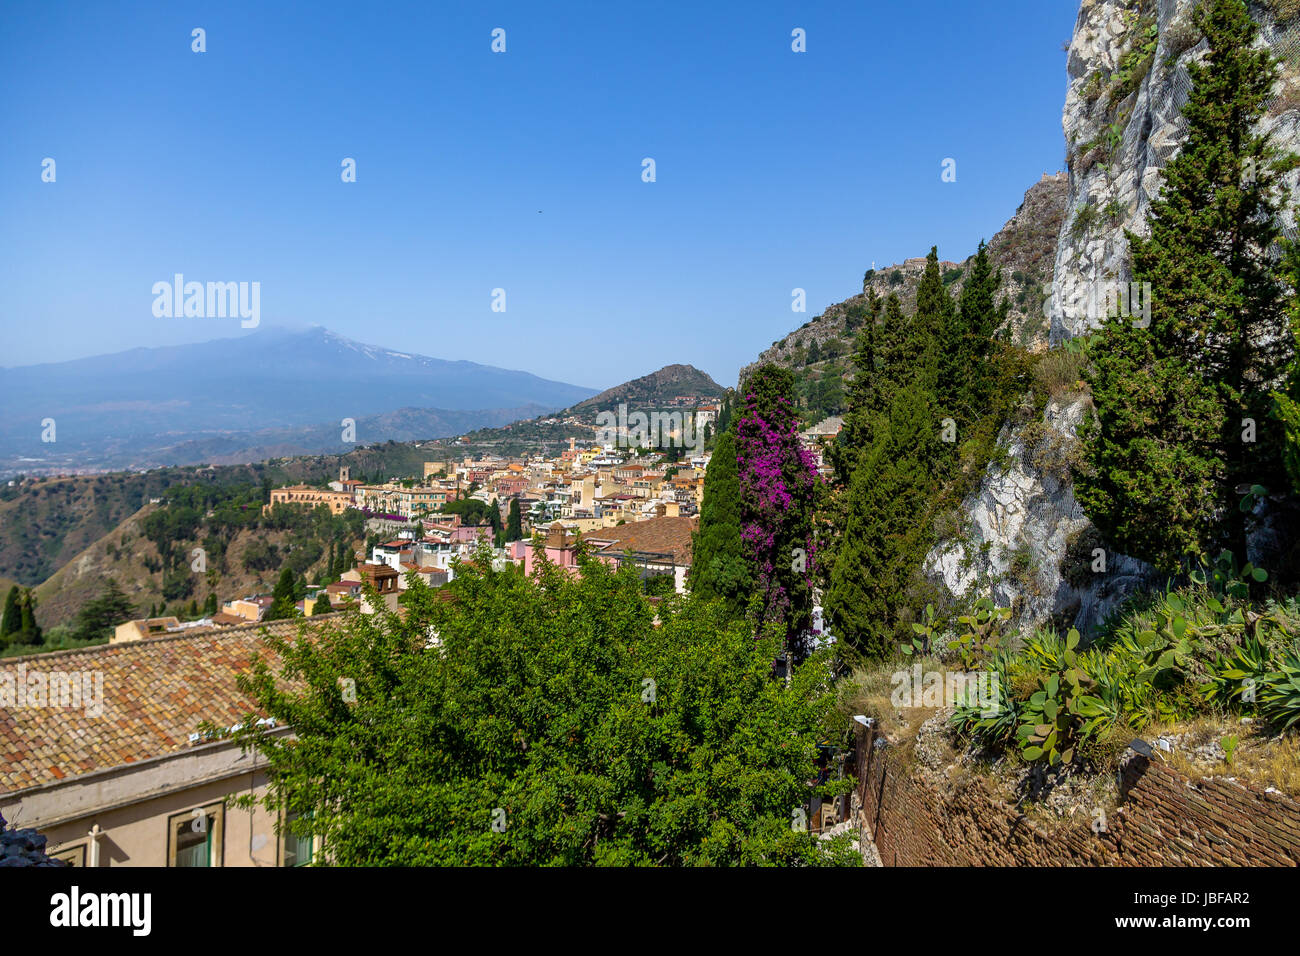 Vista aerea della città di Taormina e del monte Etna - Taormina, Sicilia, Italia Foto Stock